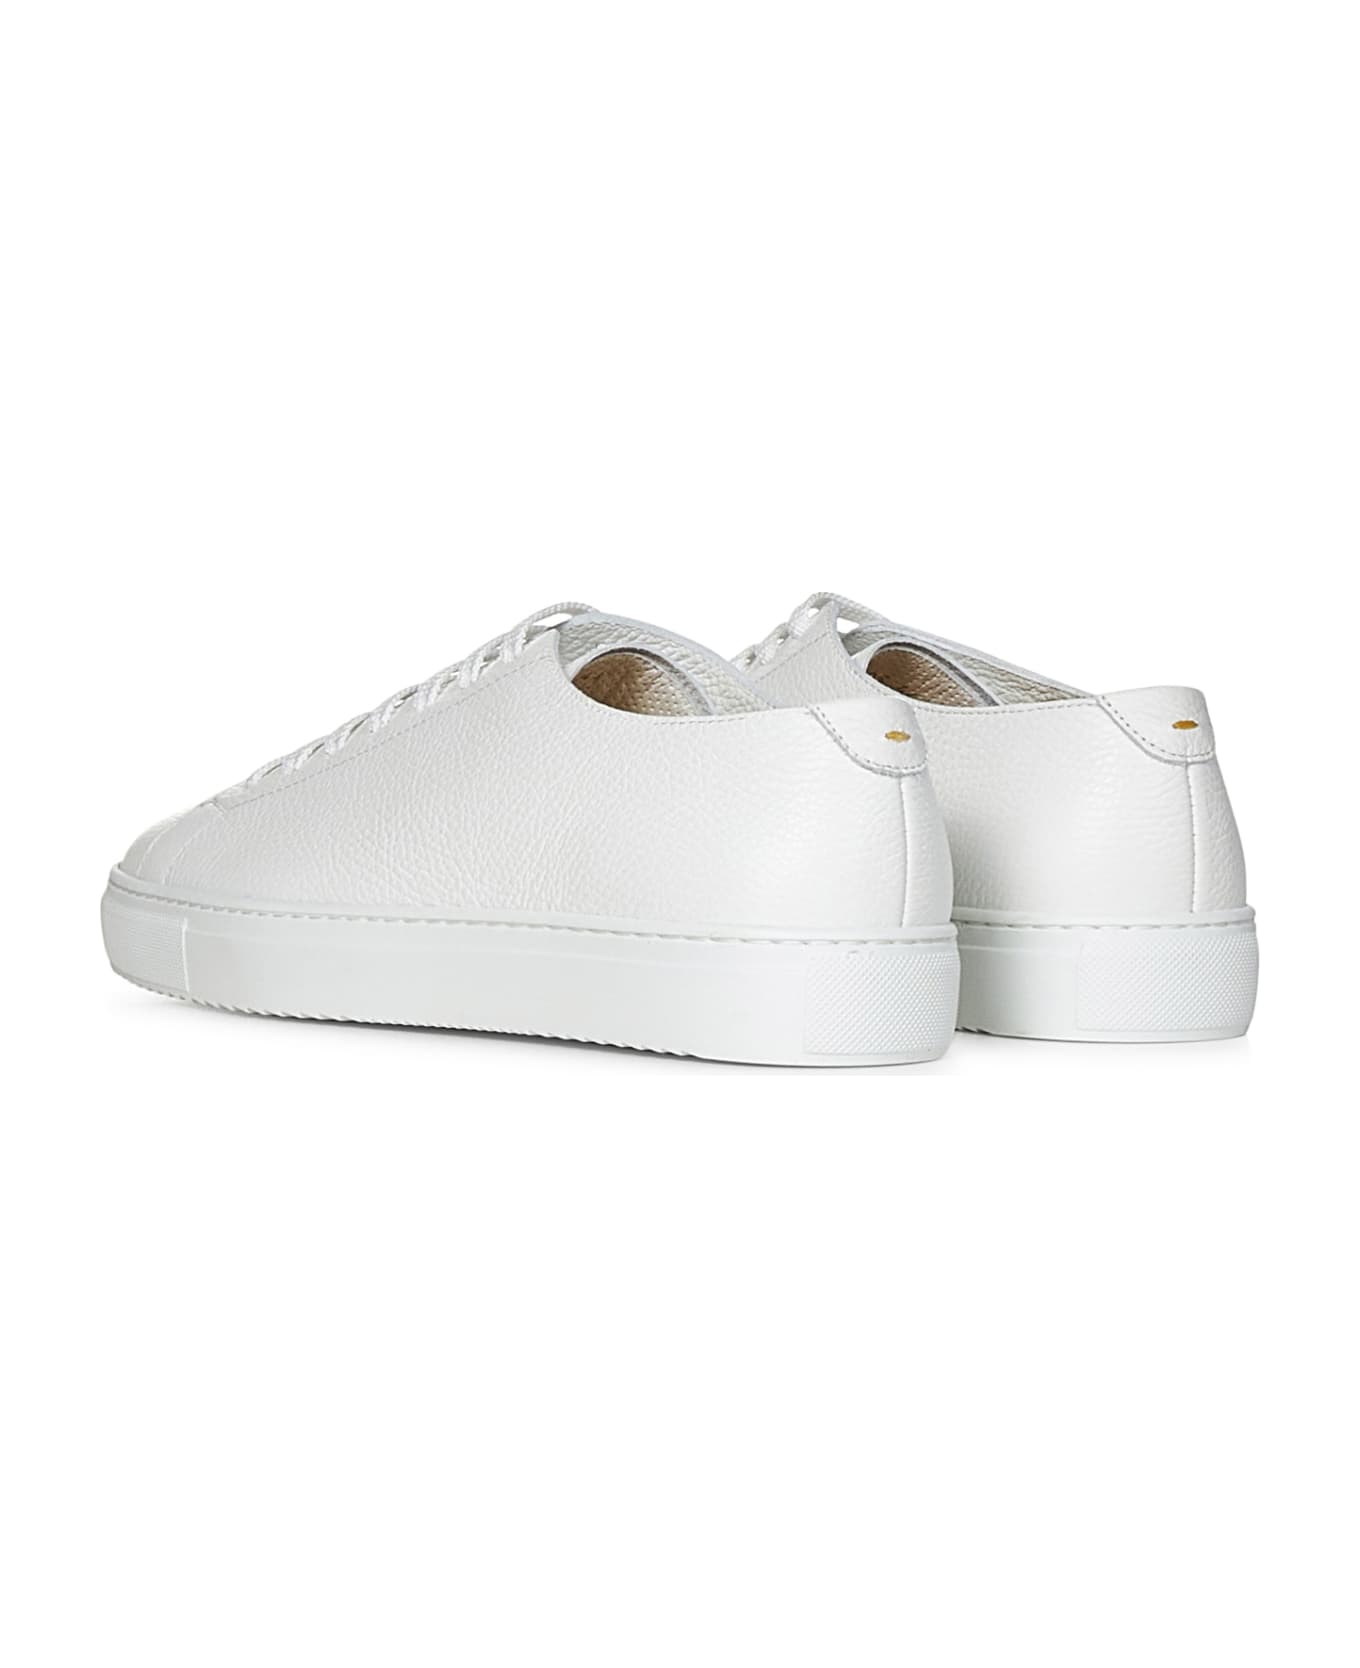 Doucal's Sneakers - White スニーカー